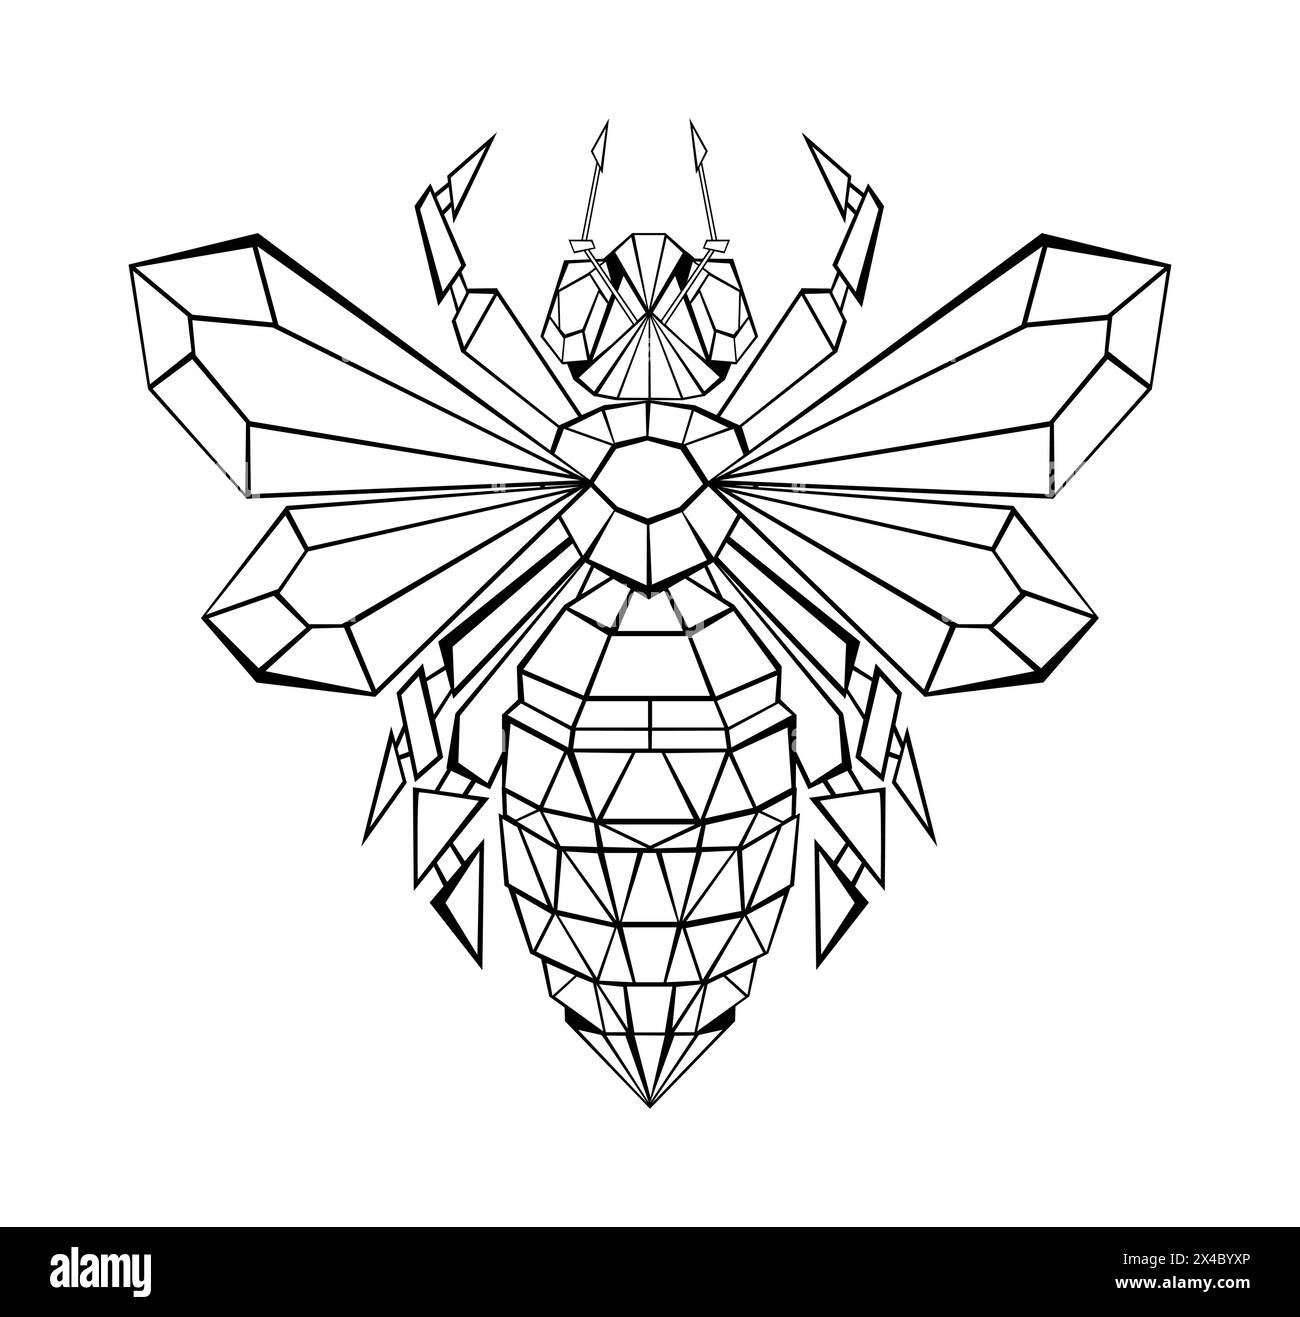 Artistiquement dessiné, polygonal, abeille de contour sur fond blanc. Style polygonal. Illustration de Vecteur